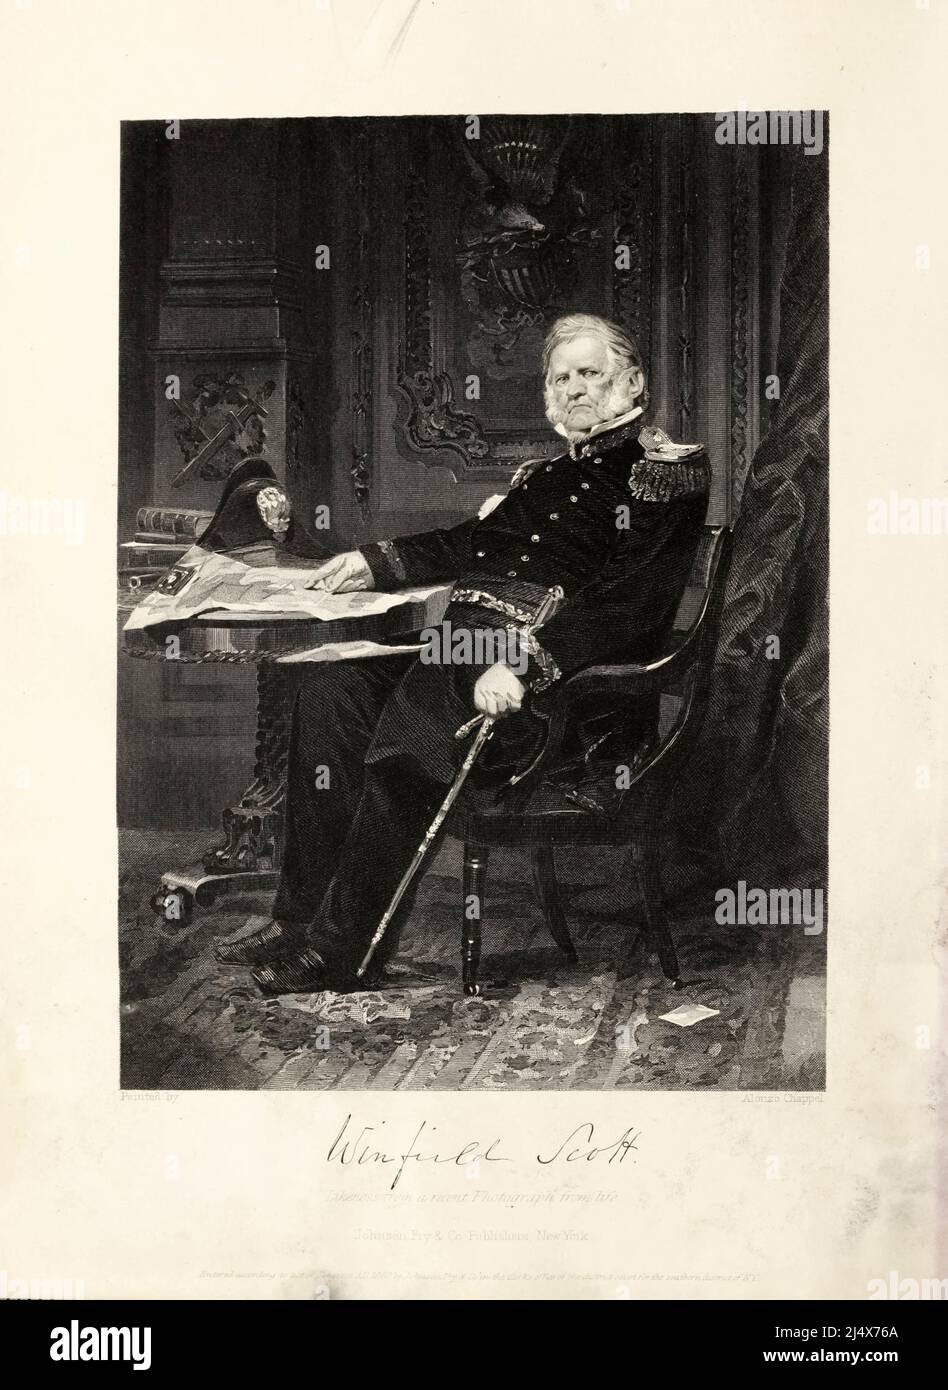 Winfield Scott (13. Juni 1786 – 29. Mai 1866) war ein amerikanischer Militärkommandeur und politischer Kandidat. Von 1814 bis 1861 diente er als General in der US-Armee, nahm an dem Krieg von 1812, dem mexikanisch-amerikanischen Krieg, den frühen Stadien des amerikanischen Bürgerkrieges und Konflikten mit Indianern Teil. Scott war bei den Wahlen 1852 Präsidentschaftskandidat der Whig Party, wurde aber vom Demokraten Franklin Pierce besiegt. Er war bekannt als Old Fuss und Feathers für sein Beharßen auf eine richtige militärische Etikette, sowie der große alte Mann der Armee für seine vielen Jahre des Dienstes. Aus dem Buch Stockfoto